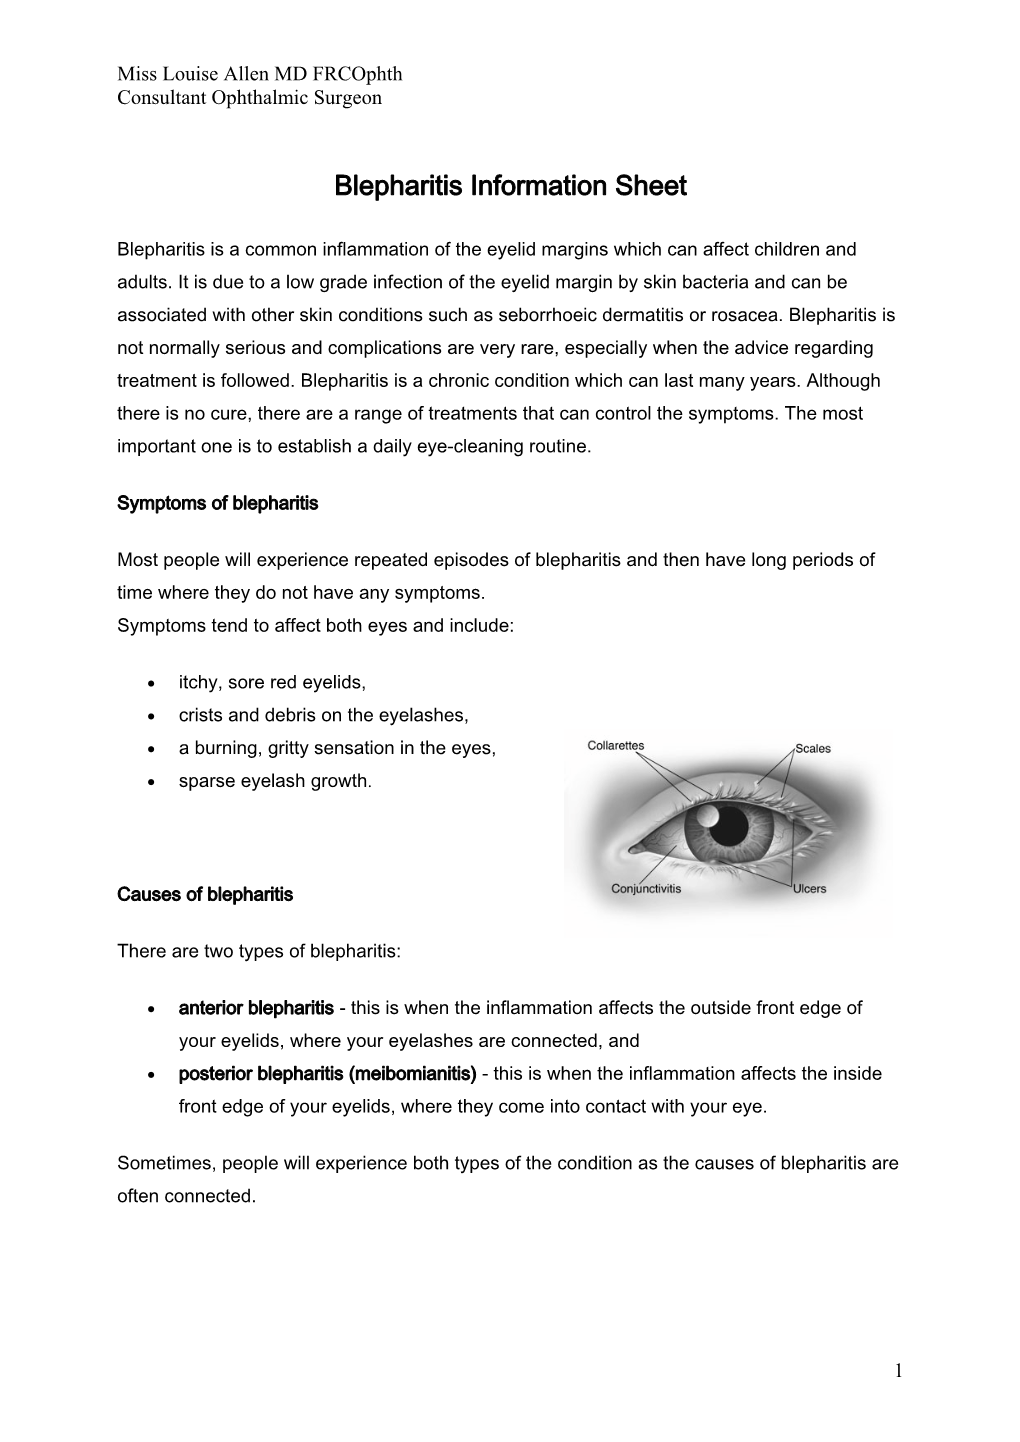 Blepharitis Information Sheet